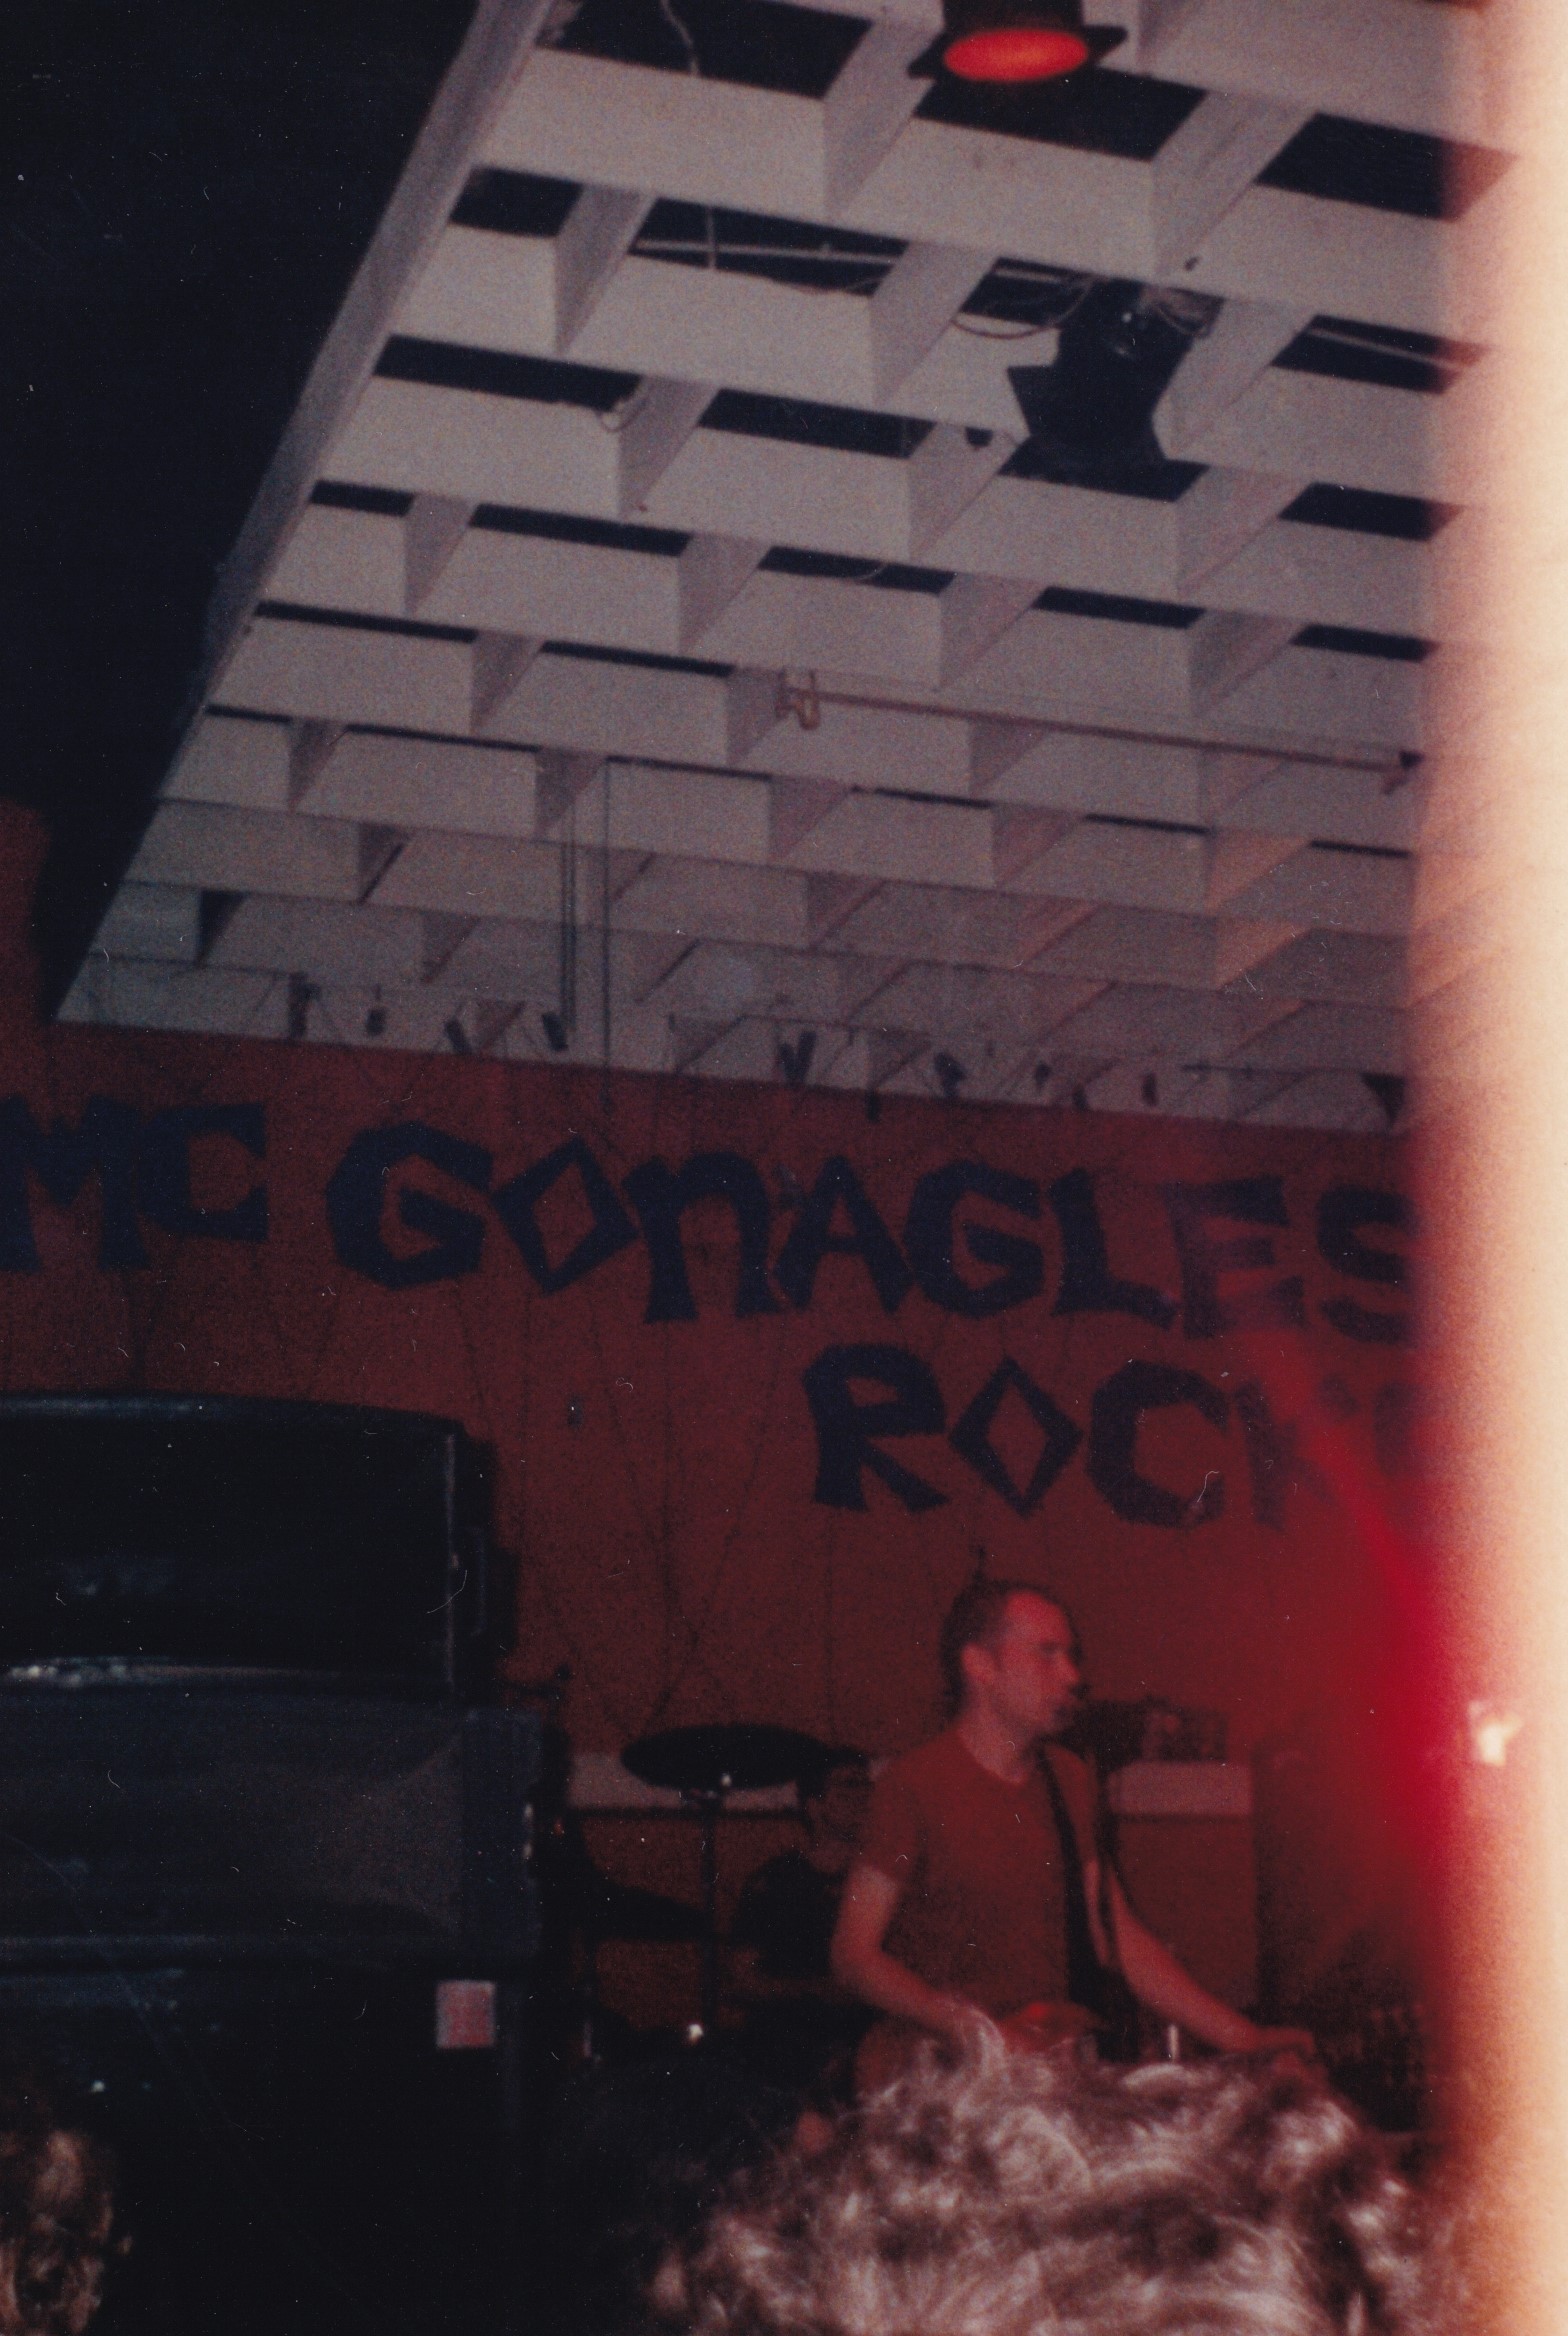 Fugazi - McGonagles, 23rd November 1989